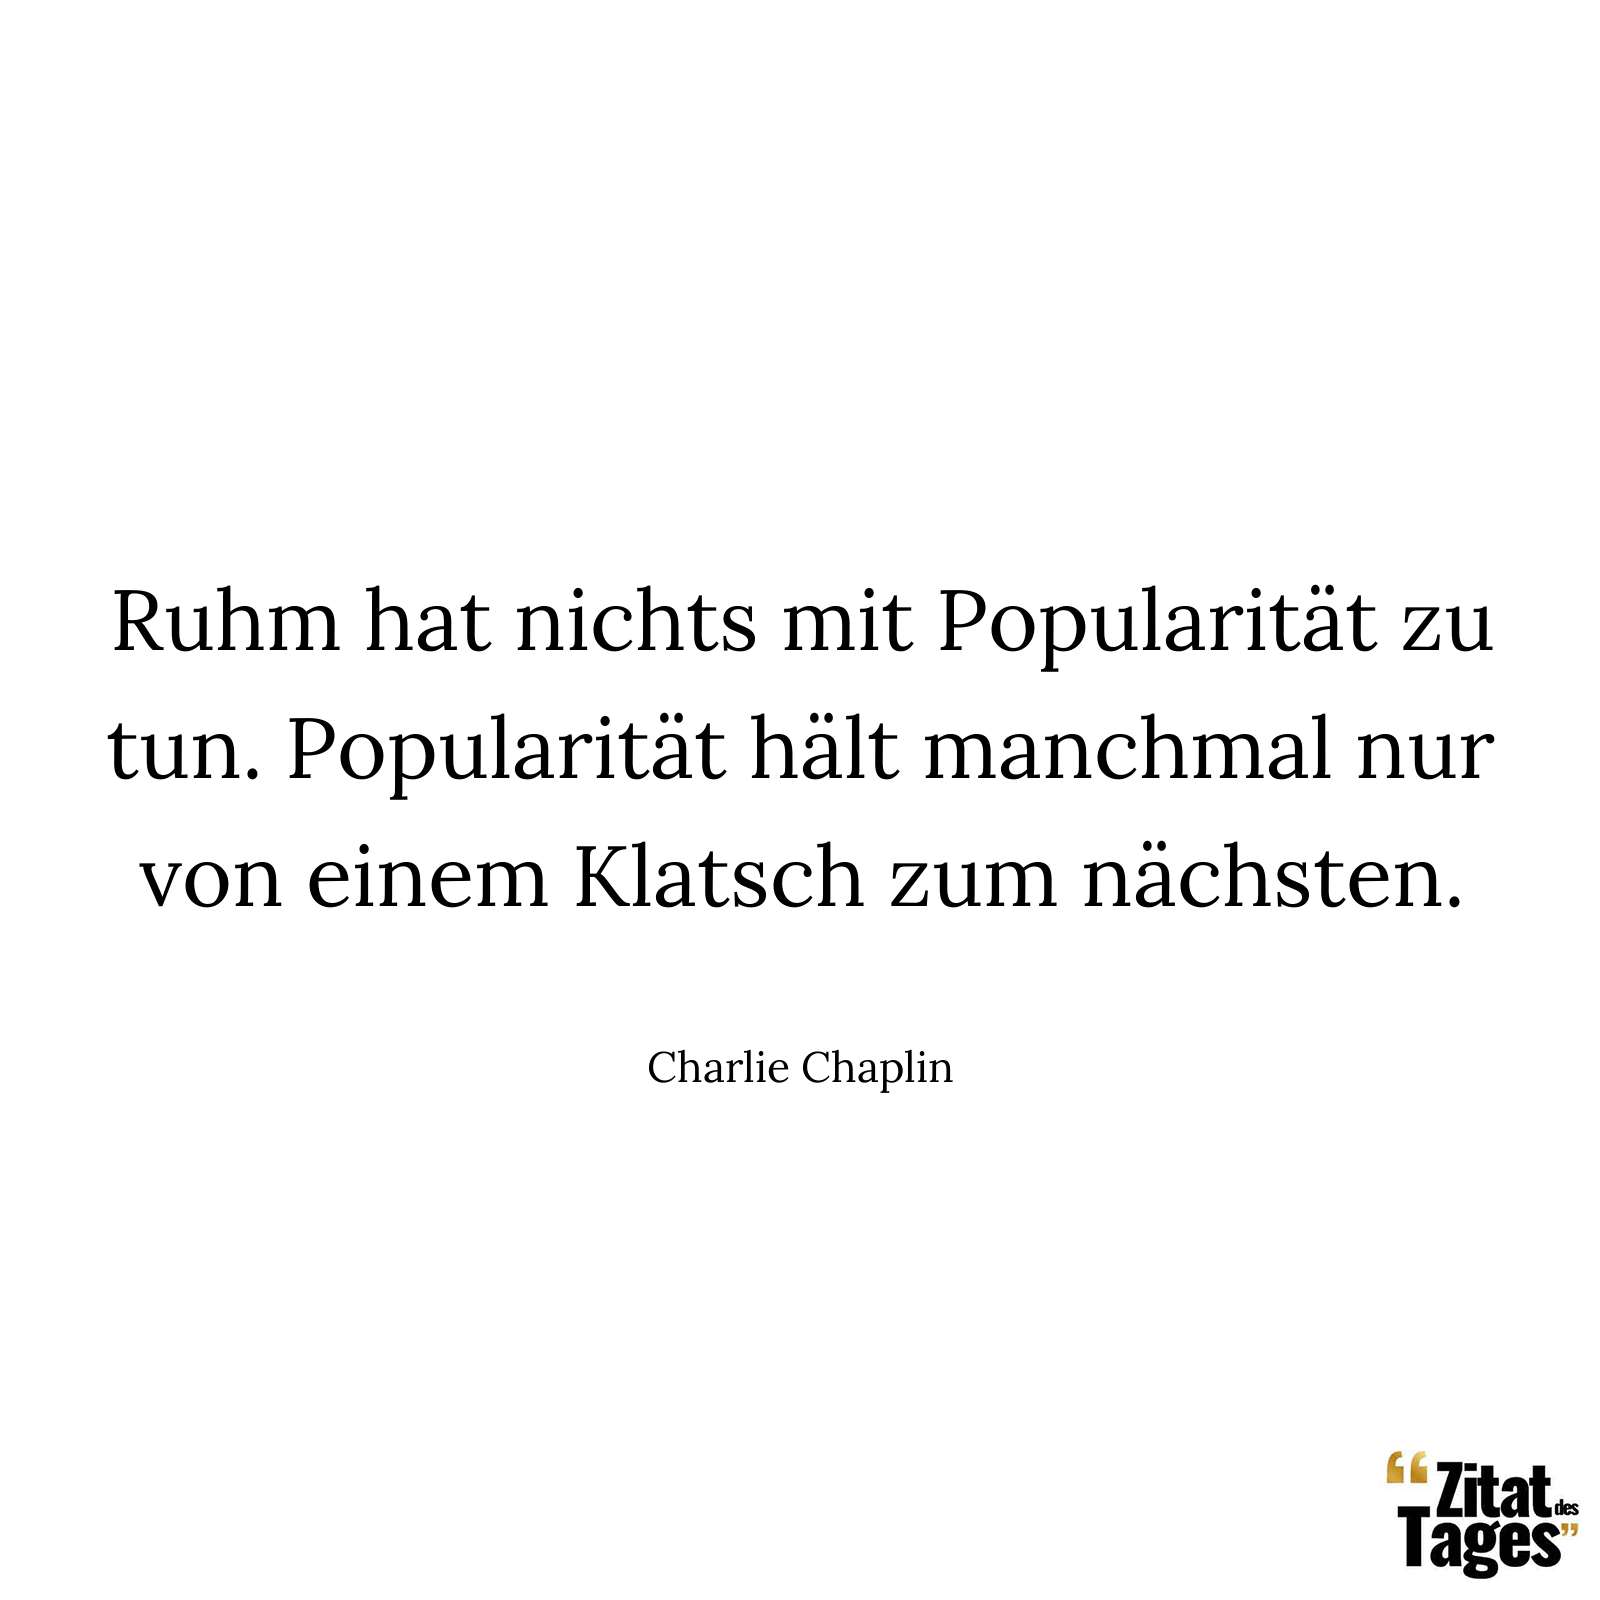 Ruhm hat nichts mit Popularität zu tun. Popularität hält manchmal nur von einem Klatsch zum nächsten. - Charlie Chaplin